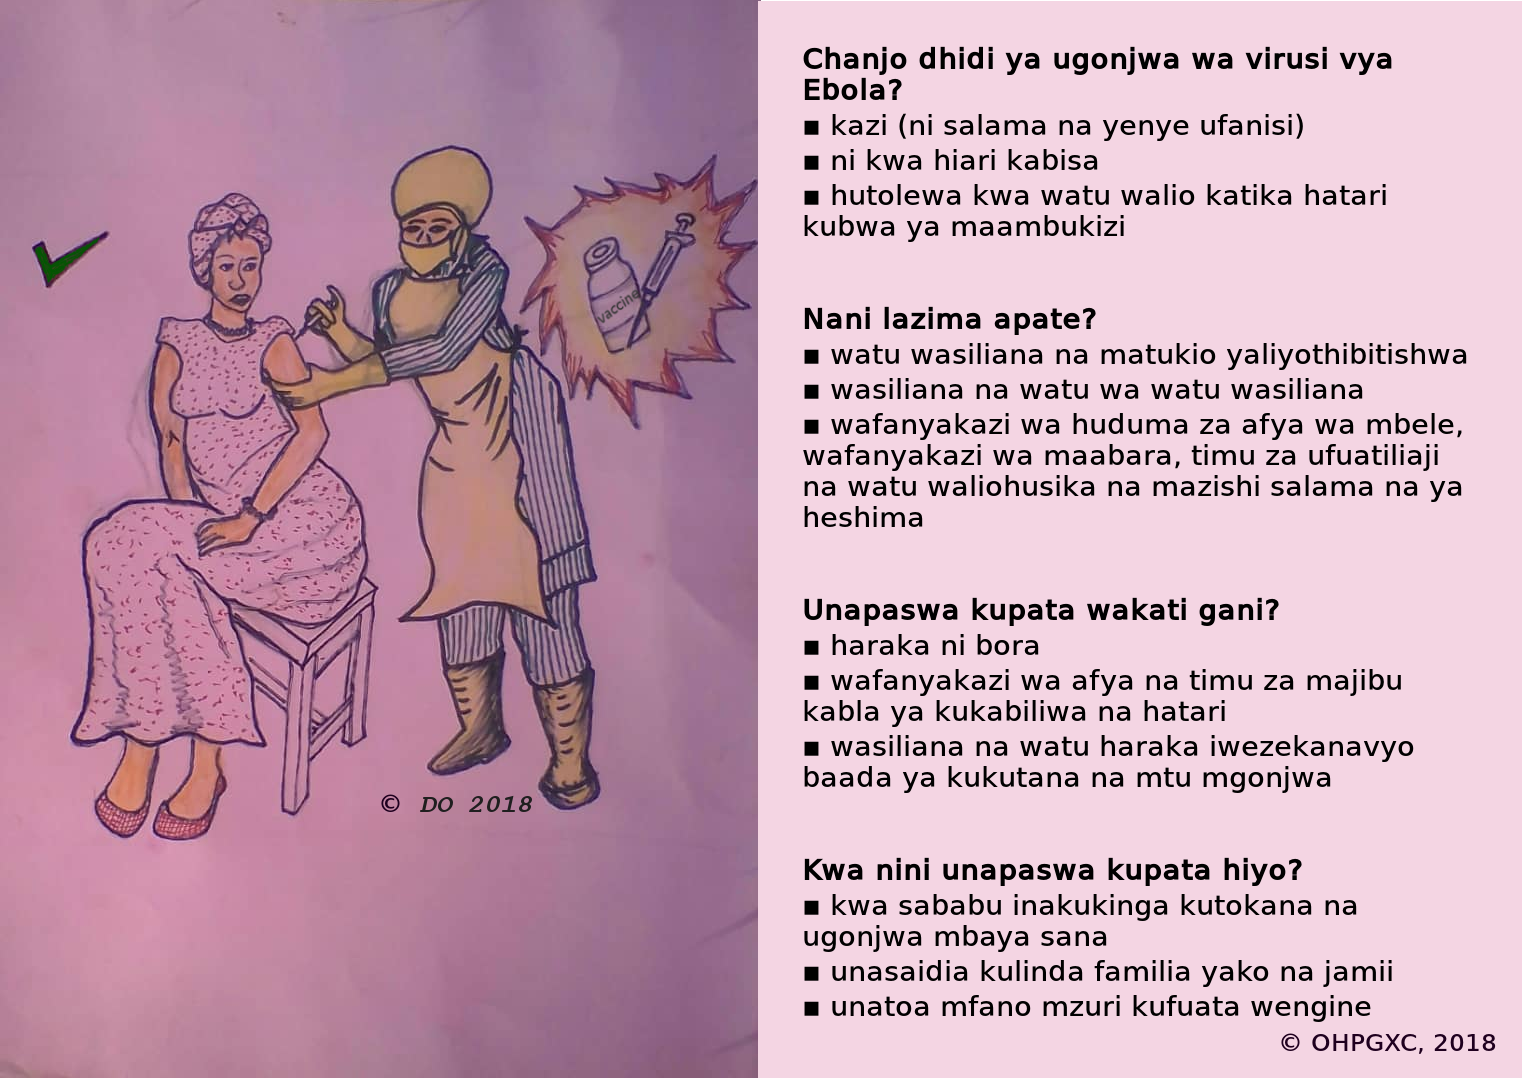 Chanjo dhidi ya ugonjwa wa virusi vya Ebola